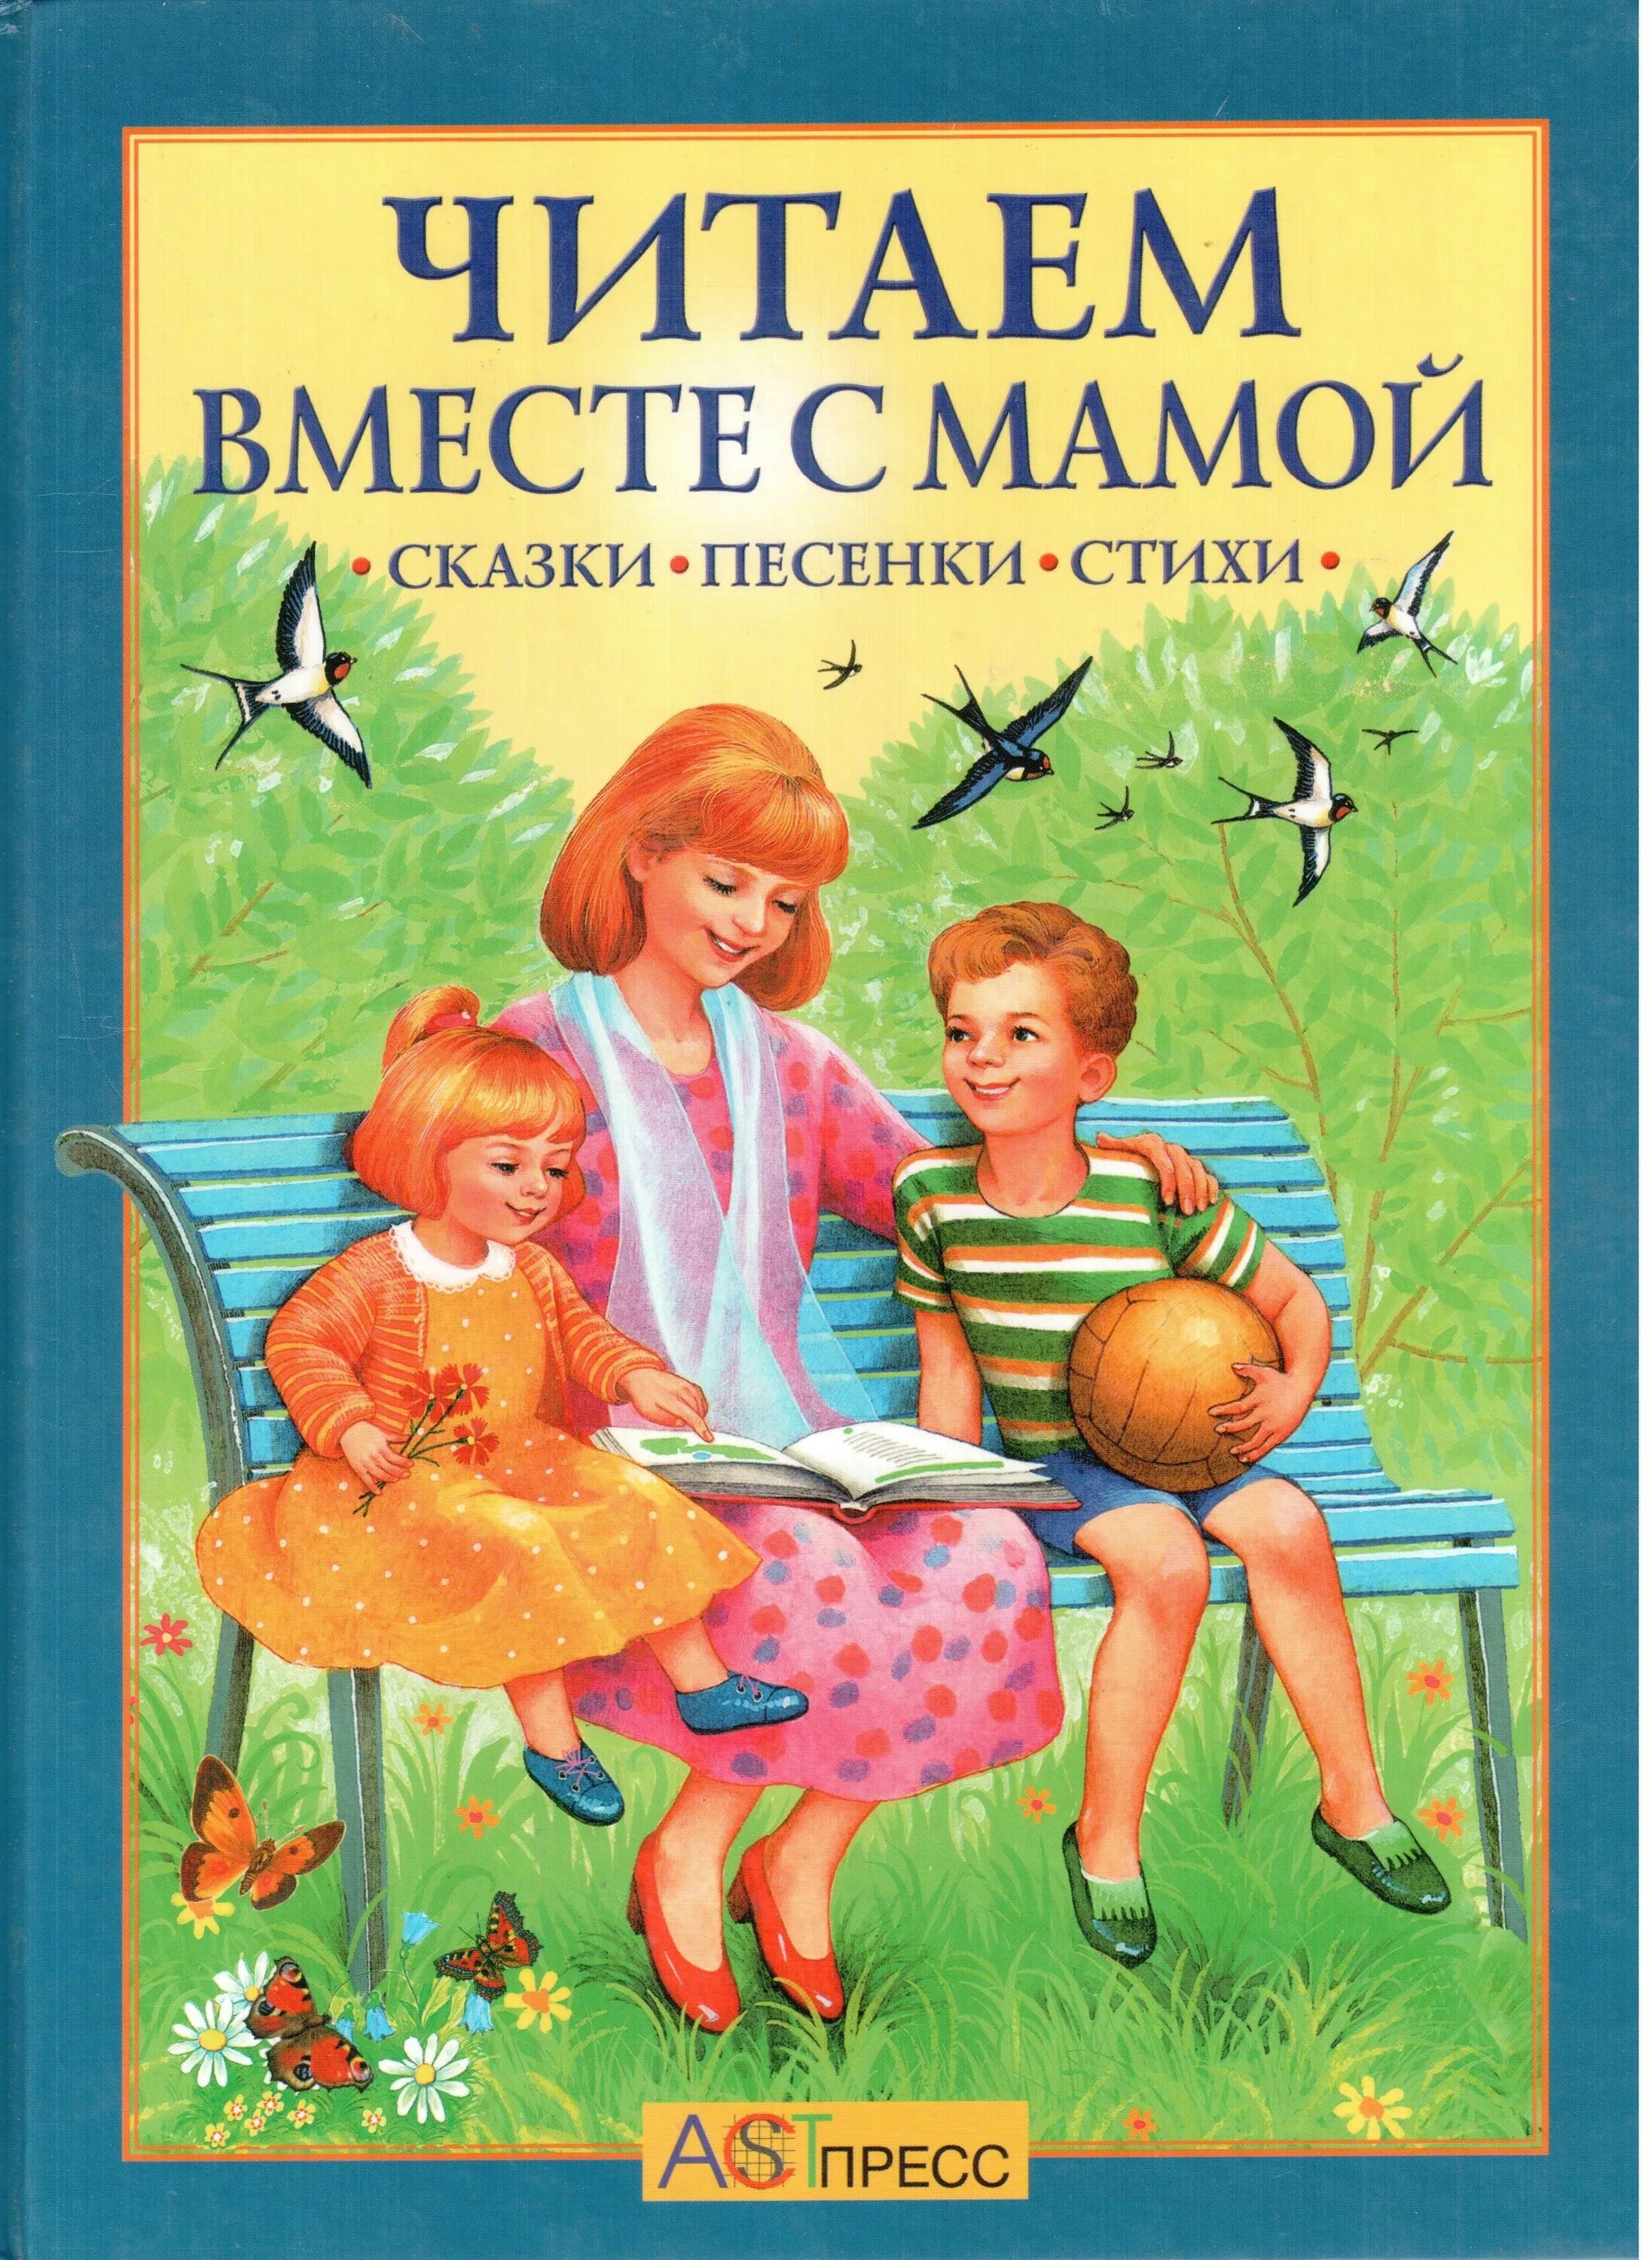 Хрестоматия. Читаем вместе с мамой. Читаем книги вместе с мамой. Сказки с мамой читаем вместе. Хрестоматия для чтения.